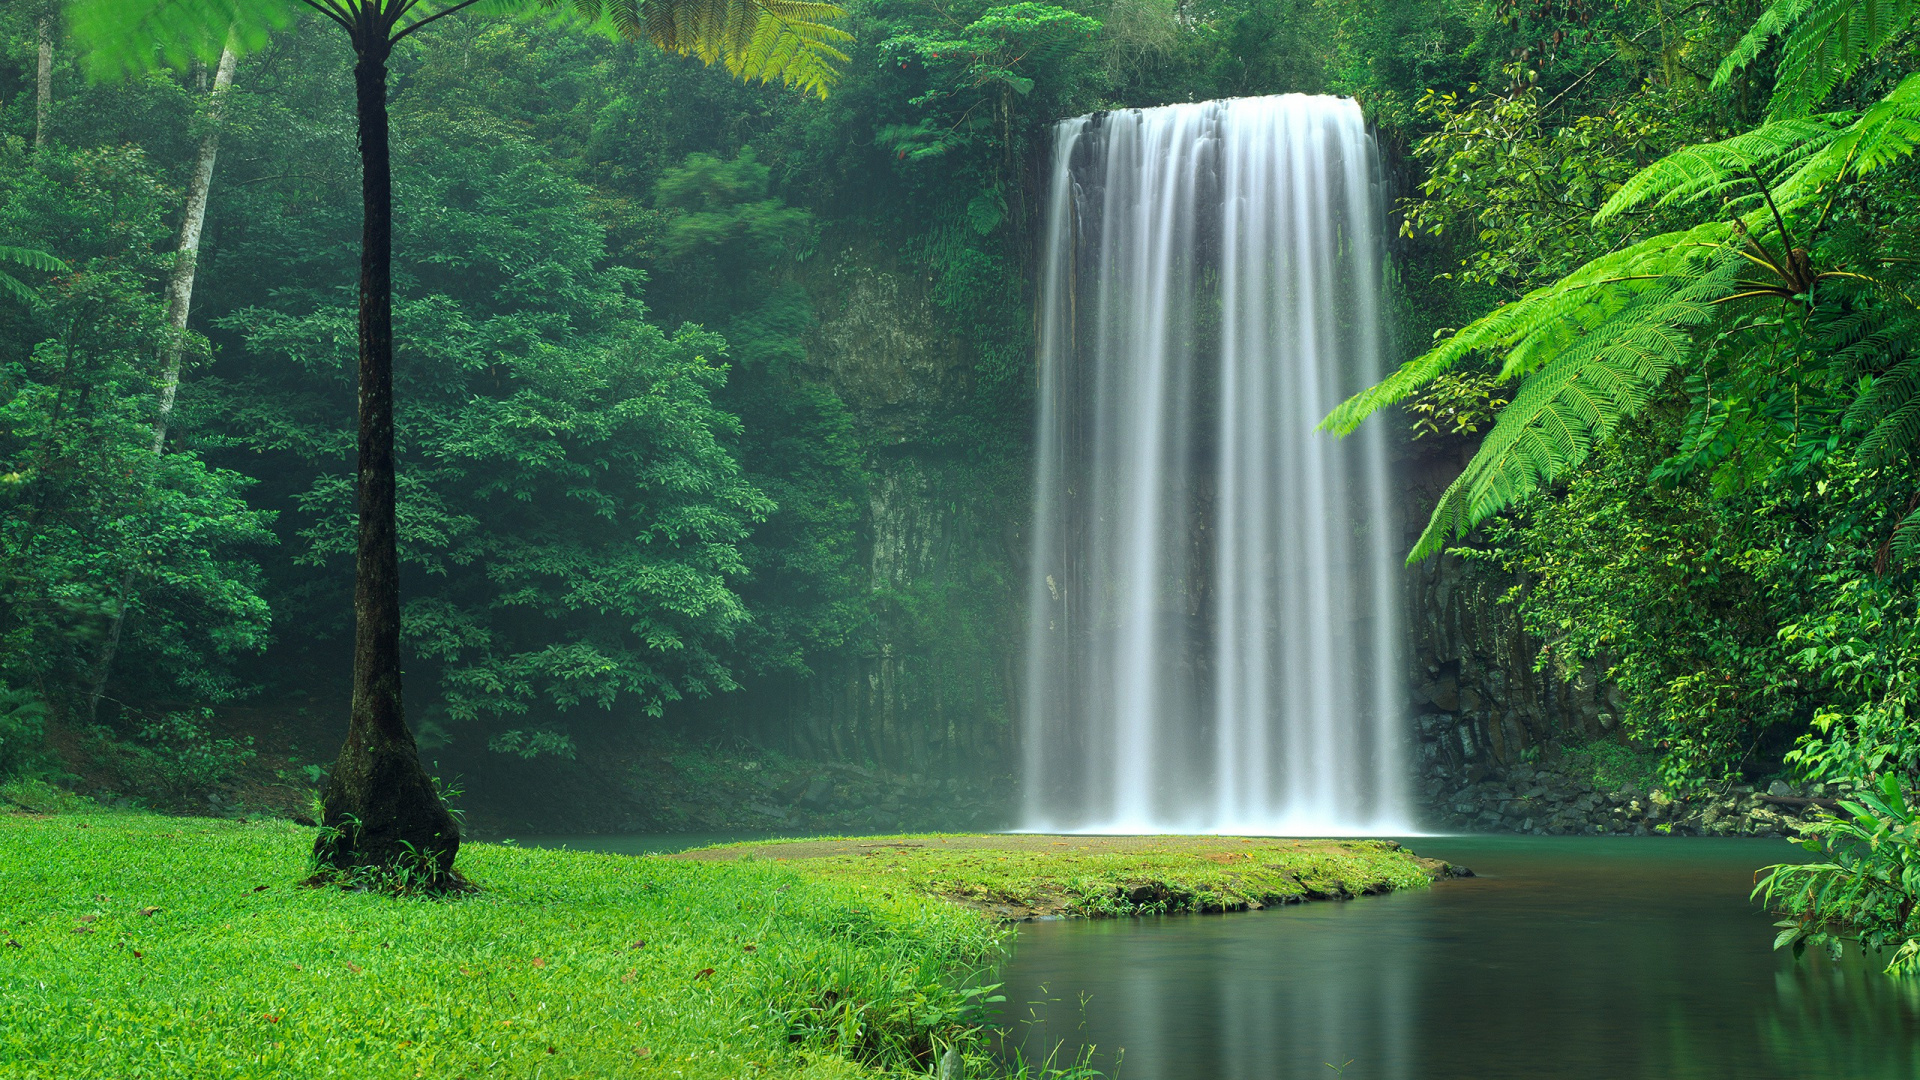 米拉米拉米拉米拉瀑布, 水资源, 性质, 人体内的水, 自然保护区 壁纸 1920x1080 允许